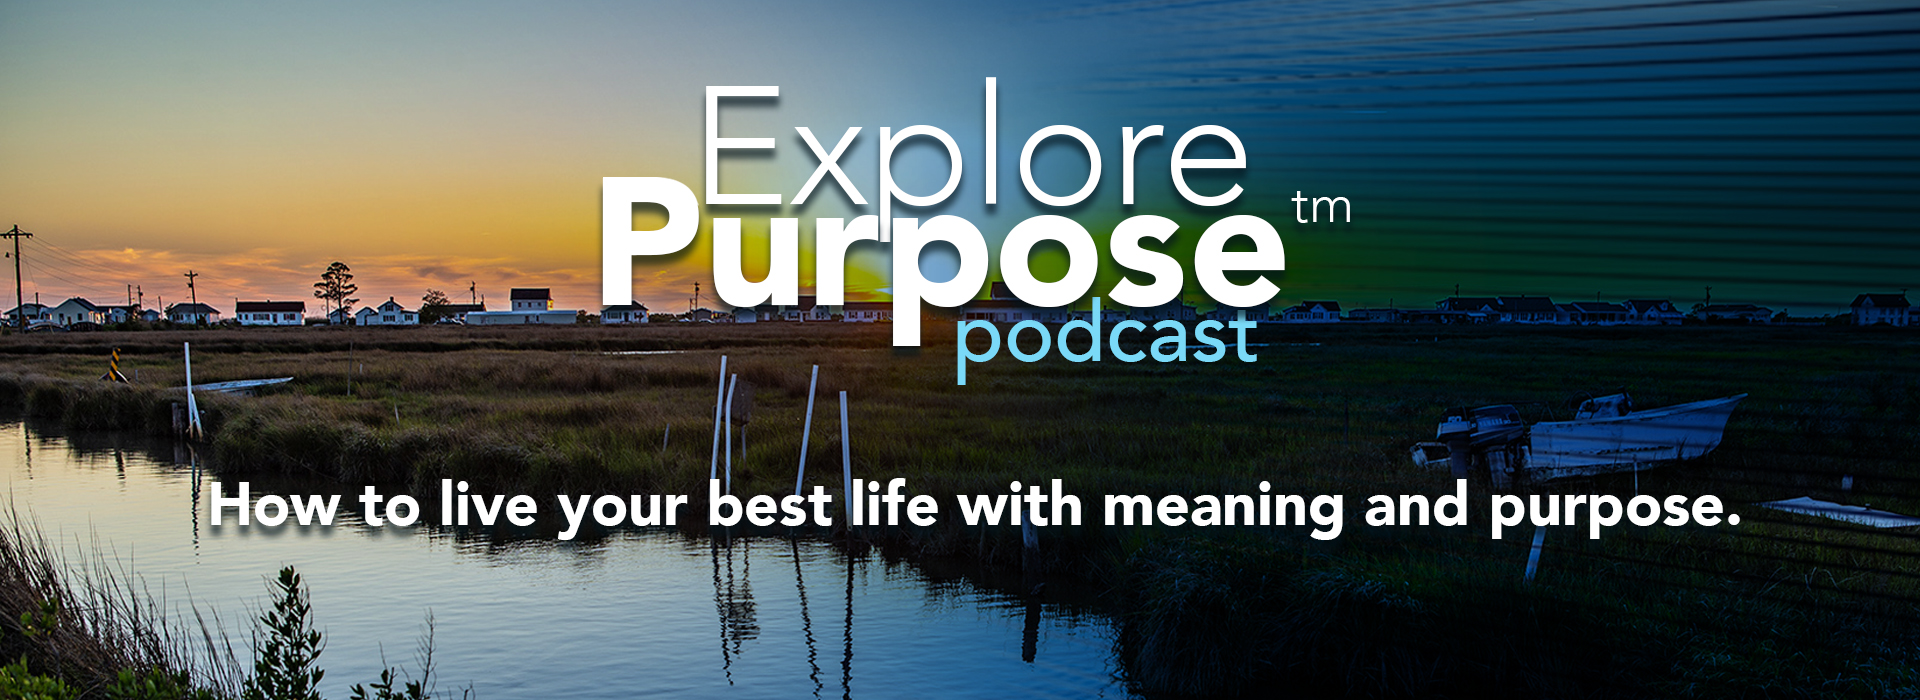 Explore Purpose Podcast